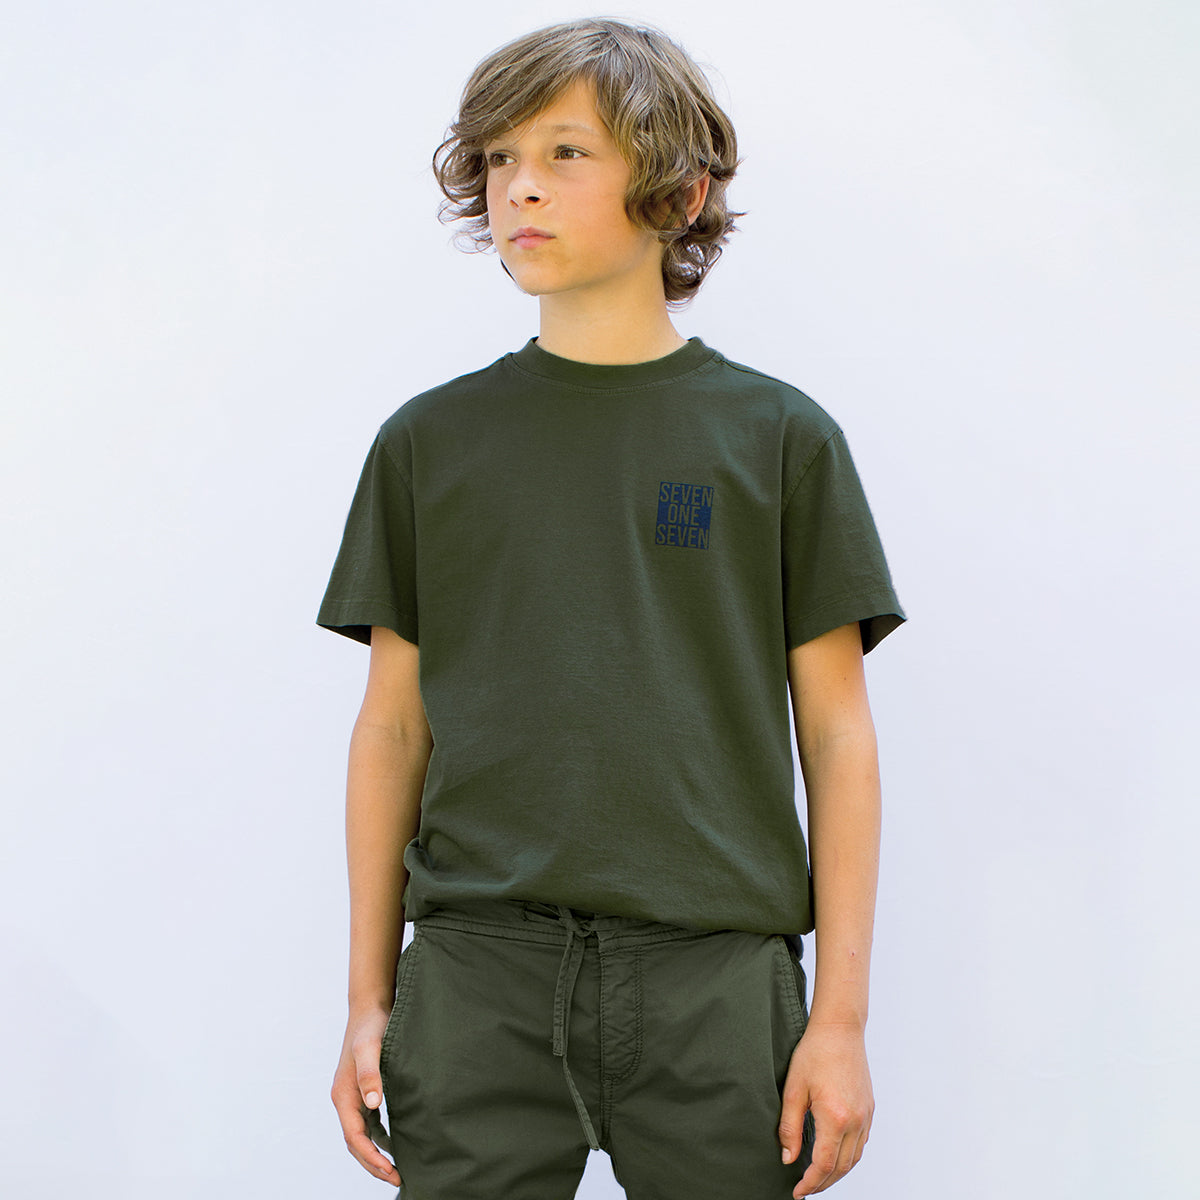 Jongens T-shirt short sleeves van SevenOneSeven in de kleur Khaki Green in maat 170-176.